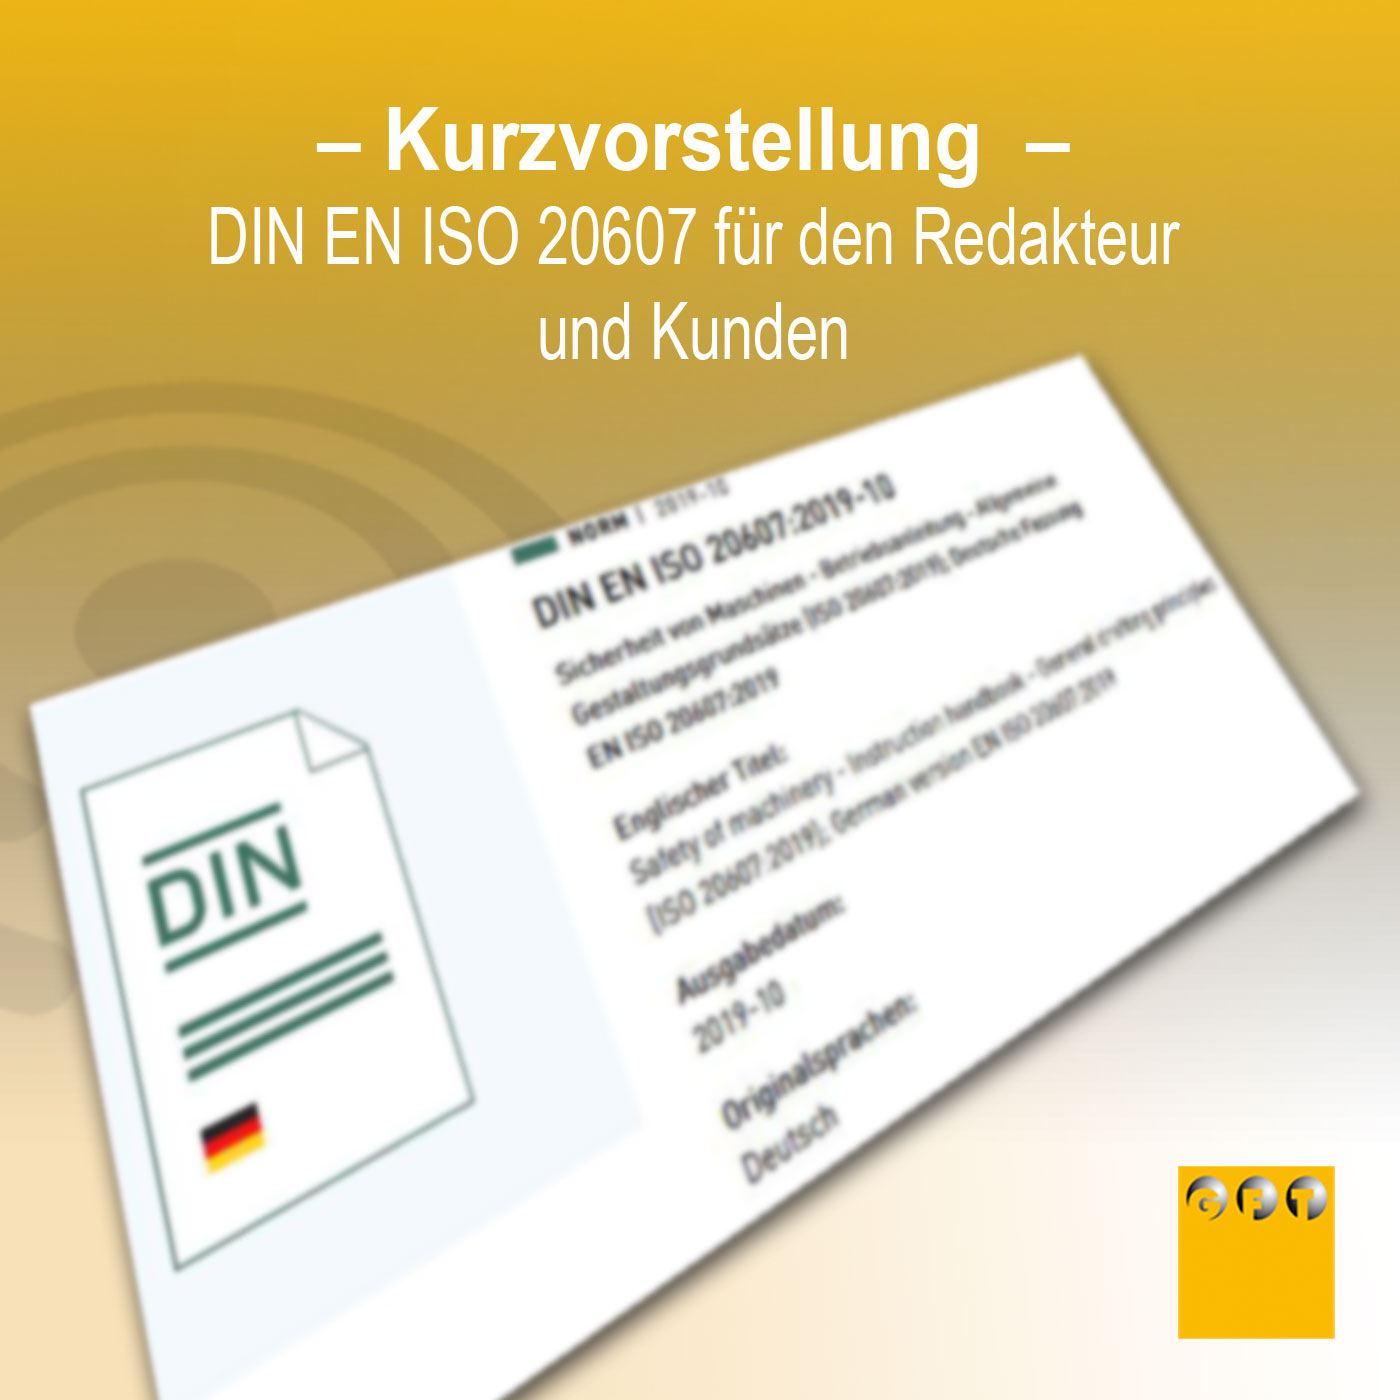 Extra #015 Kurzvorstellung DIN EN ISO 20607 Für Technische Redakteure Mit Matthias Schulz